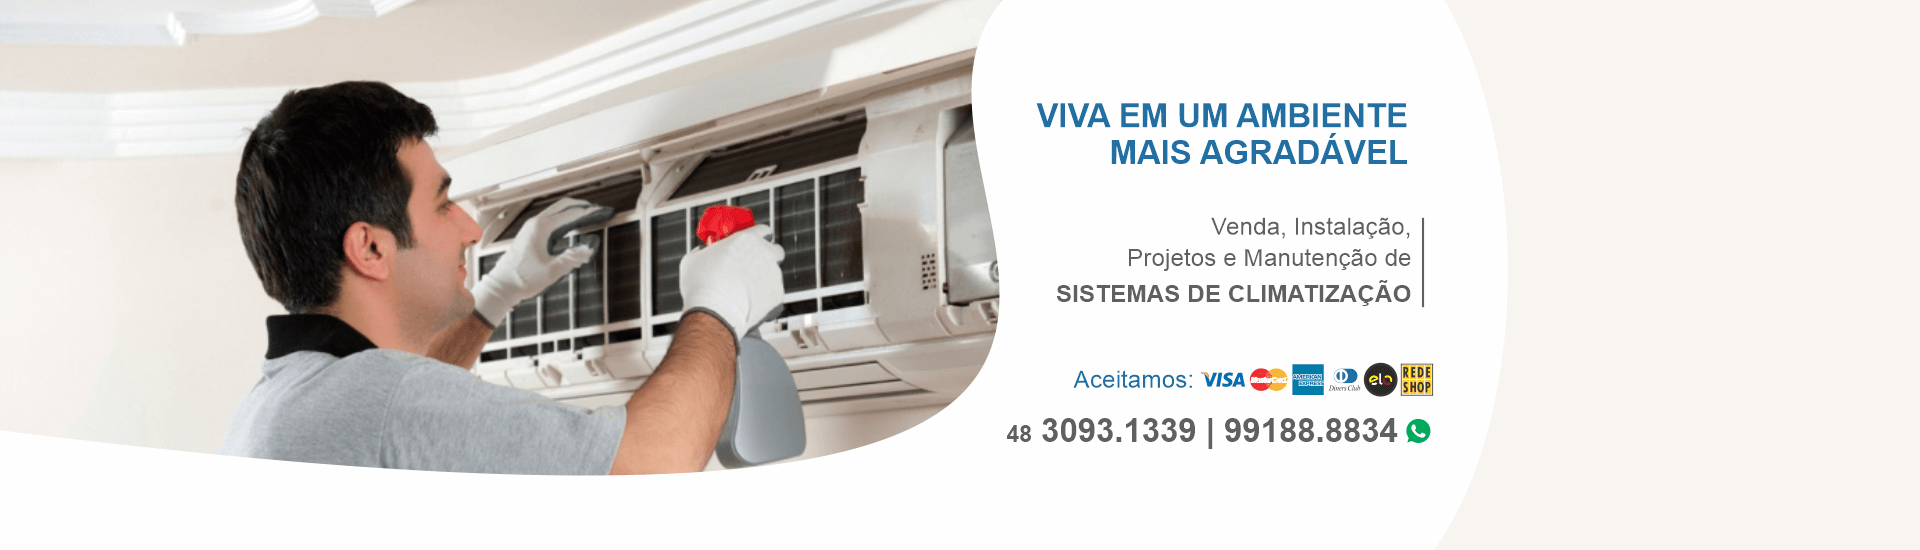 Kompetenz Climatização, Venda, Instalação, Manutenção e Projetos de Ar Condicionado em toda grande Florianópolis